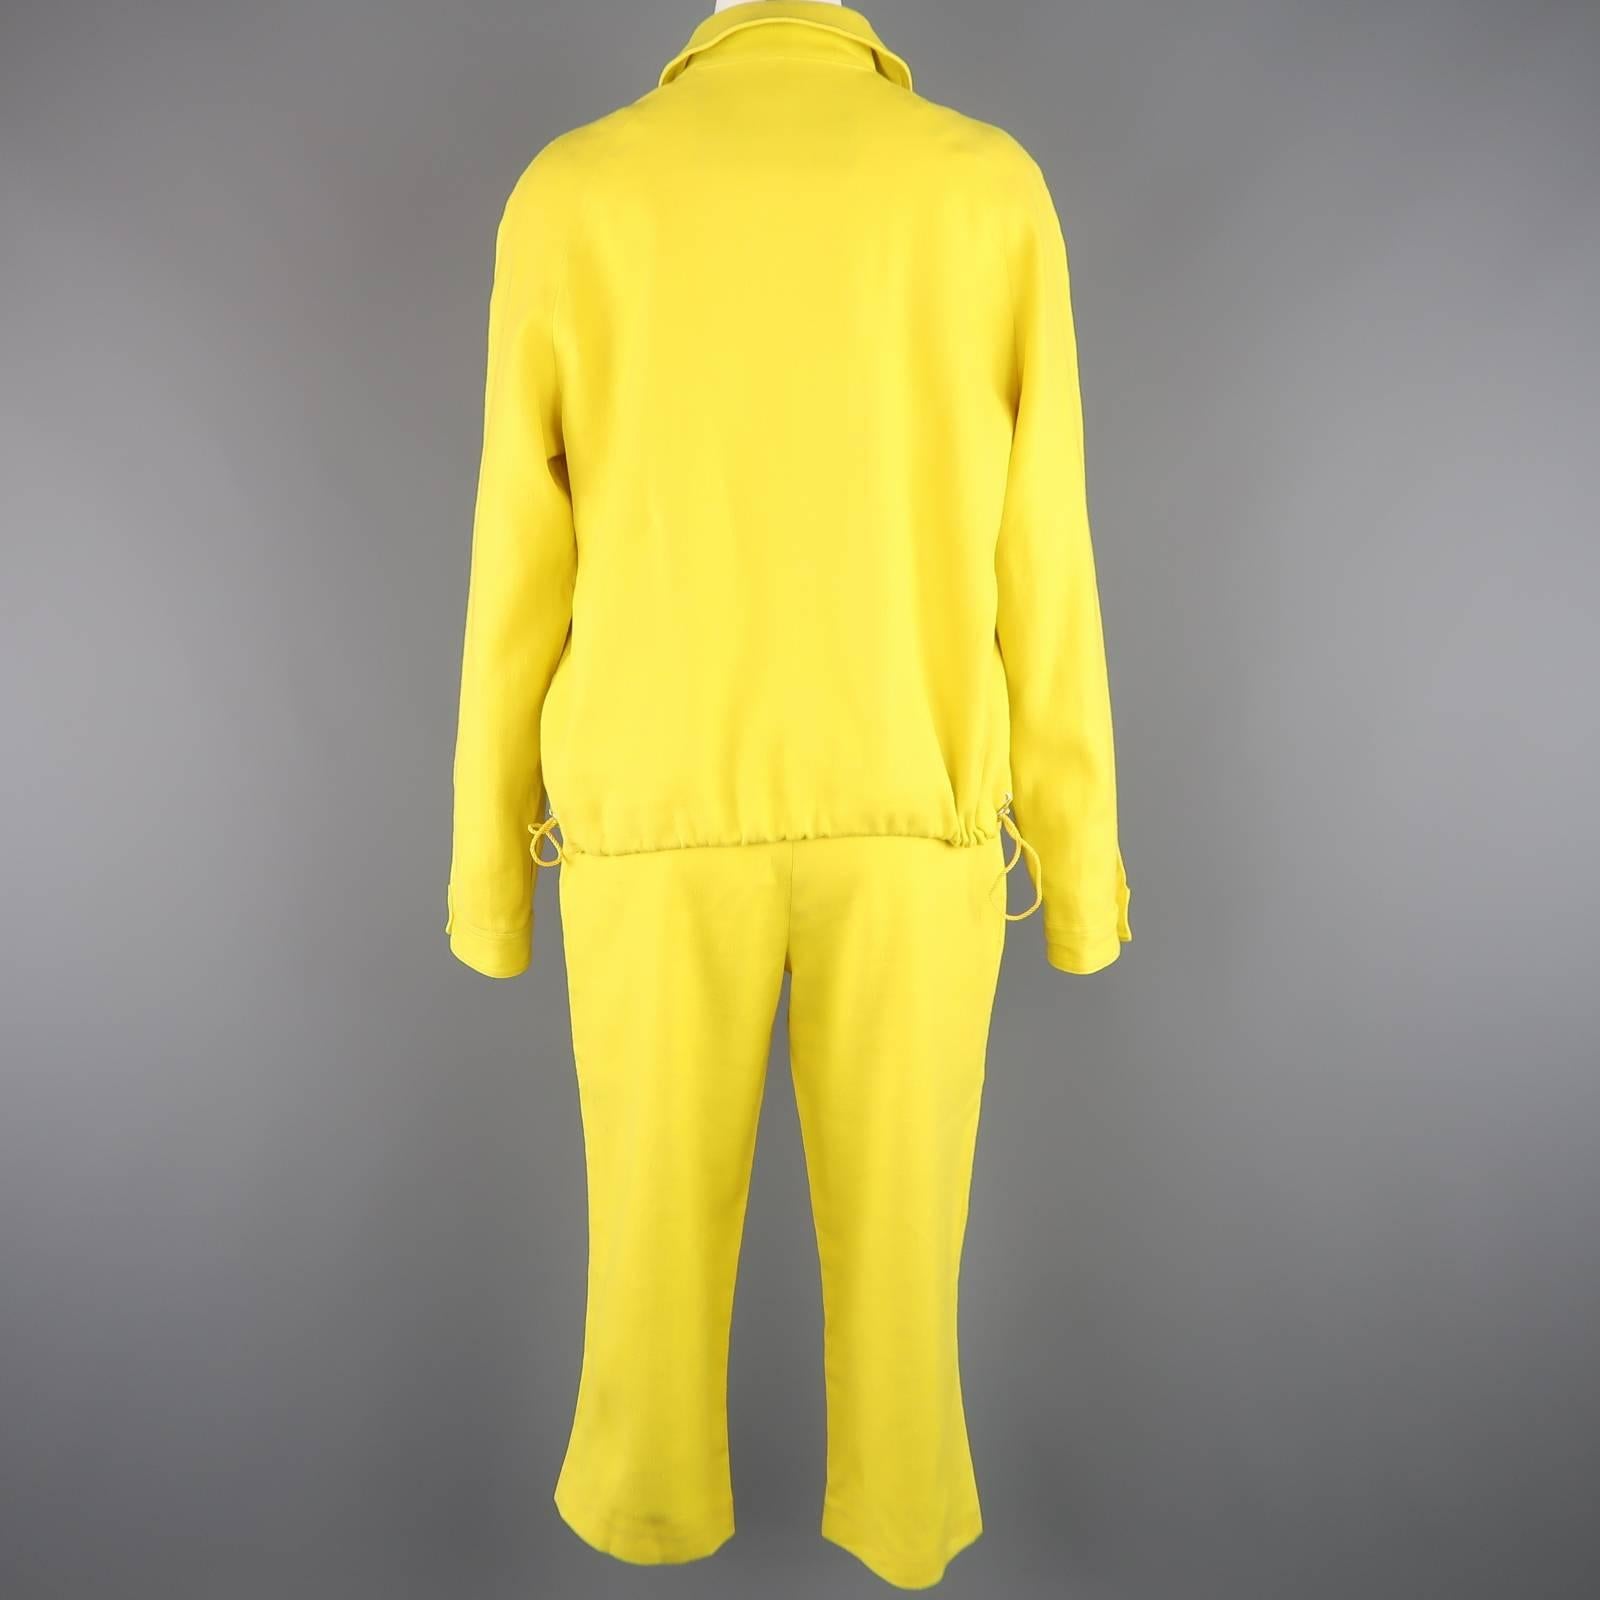 GIANFRANCO FERRE JEANS Size 8 Yellow Linen Blend Capri Pant Suit 3